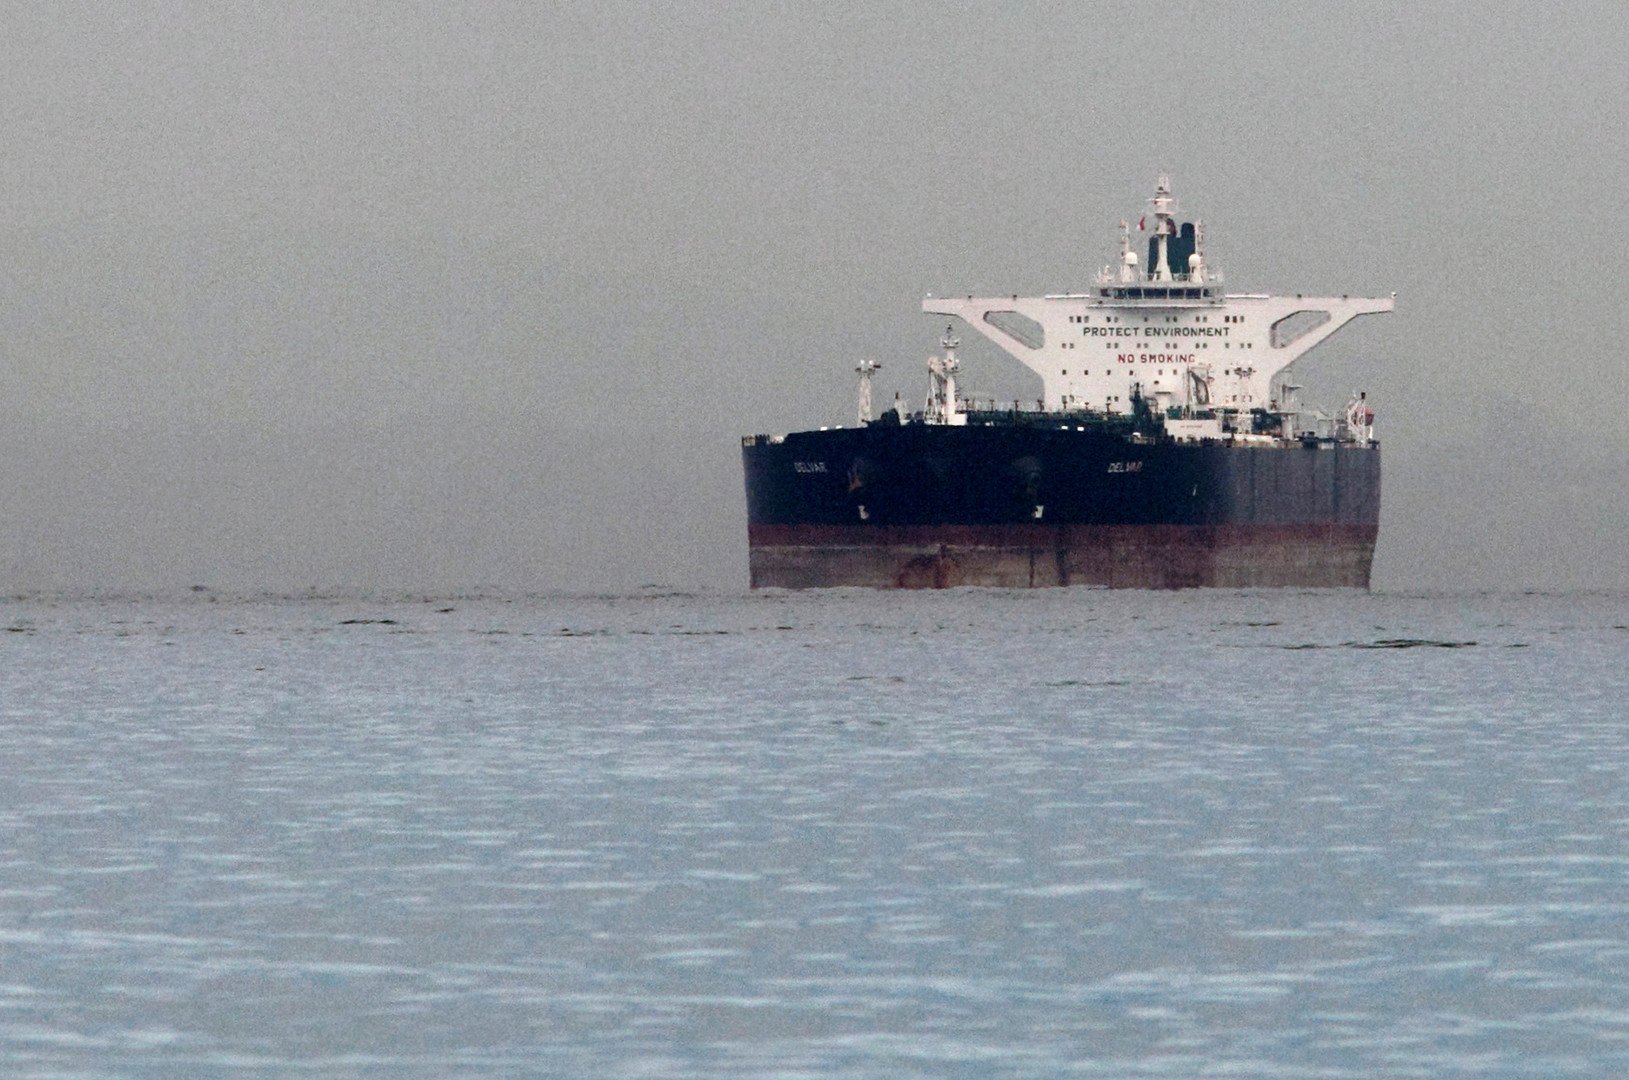 صحيفة أمريكية: 12 ناقلة إيرانية تحمل النفط إلى دول أخرى رغم عقوبات واشنطن